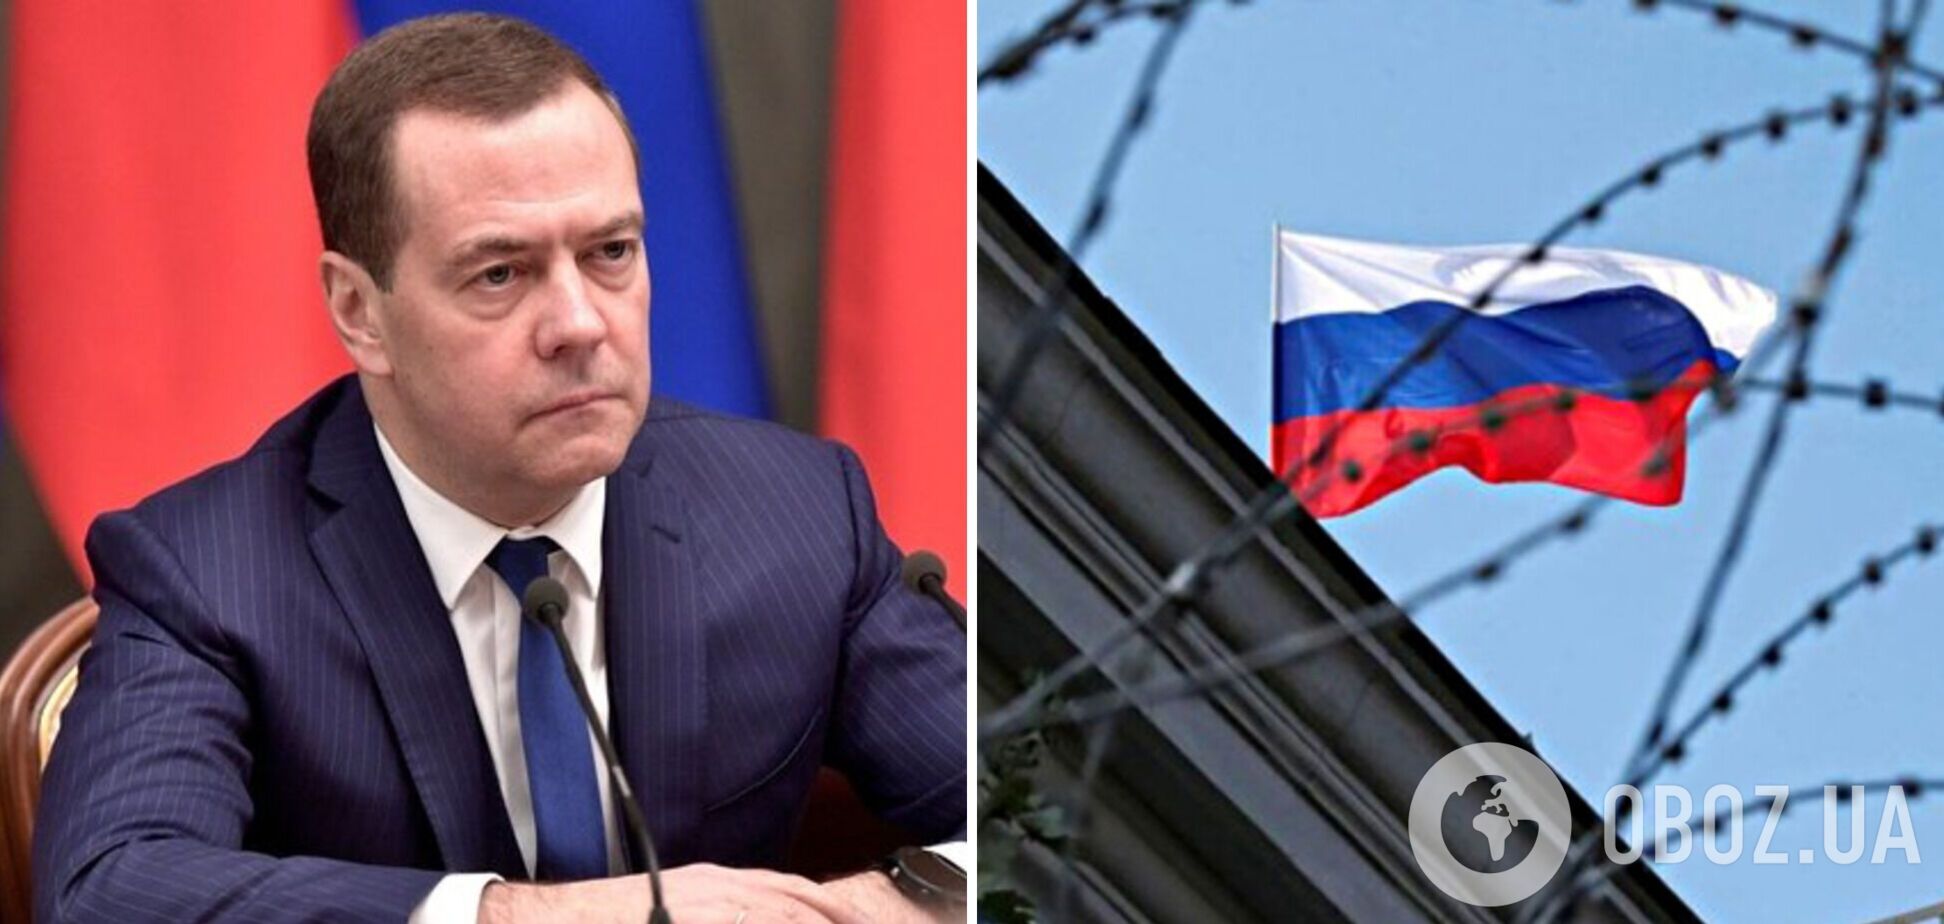 Мы в полной изоляции: Медведев заявил, что Россия впервые за 150 лет потеряла союзников